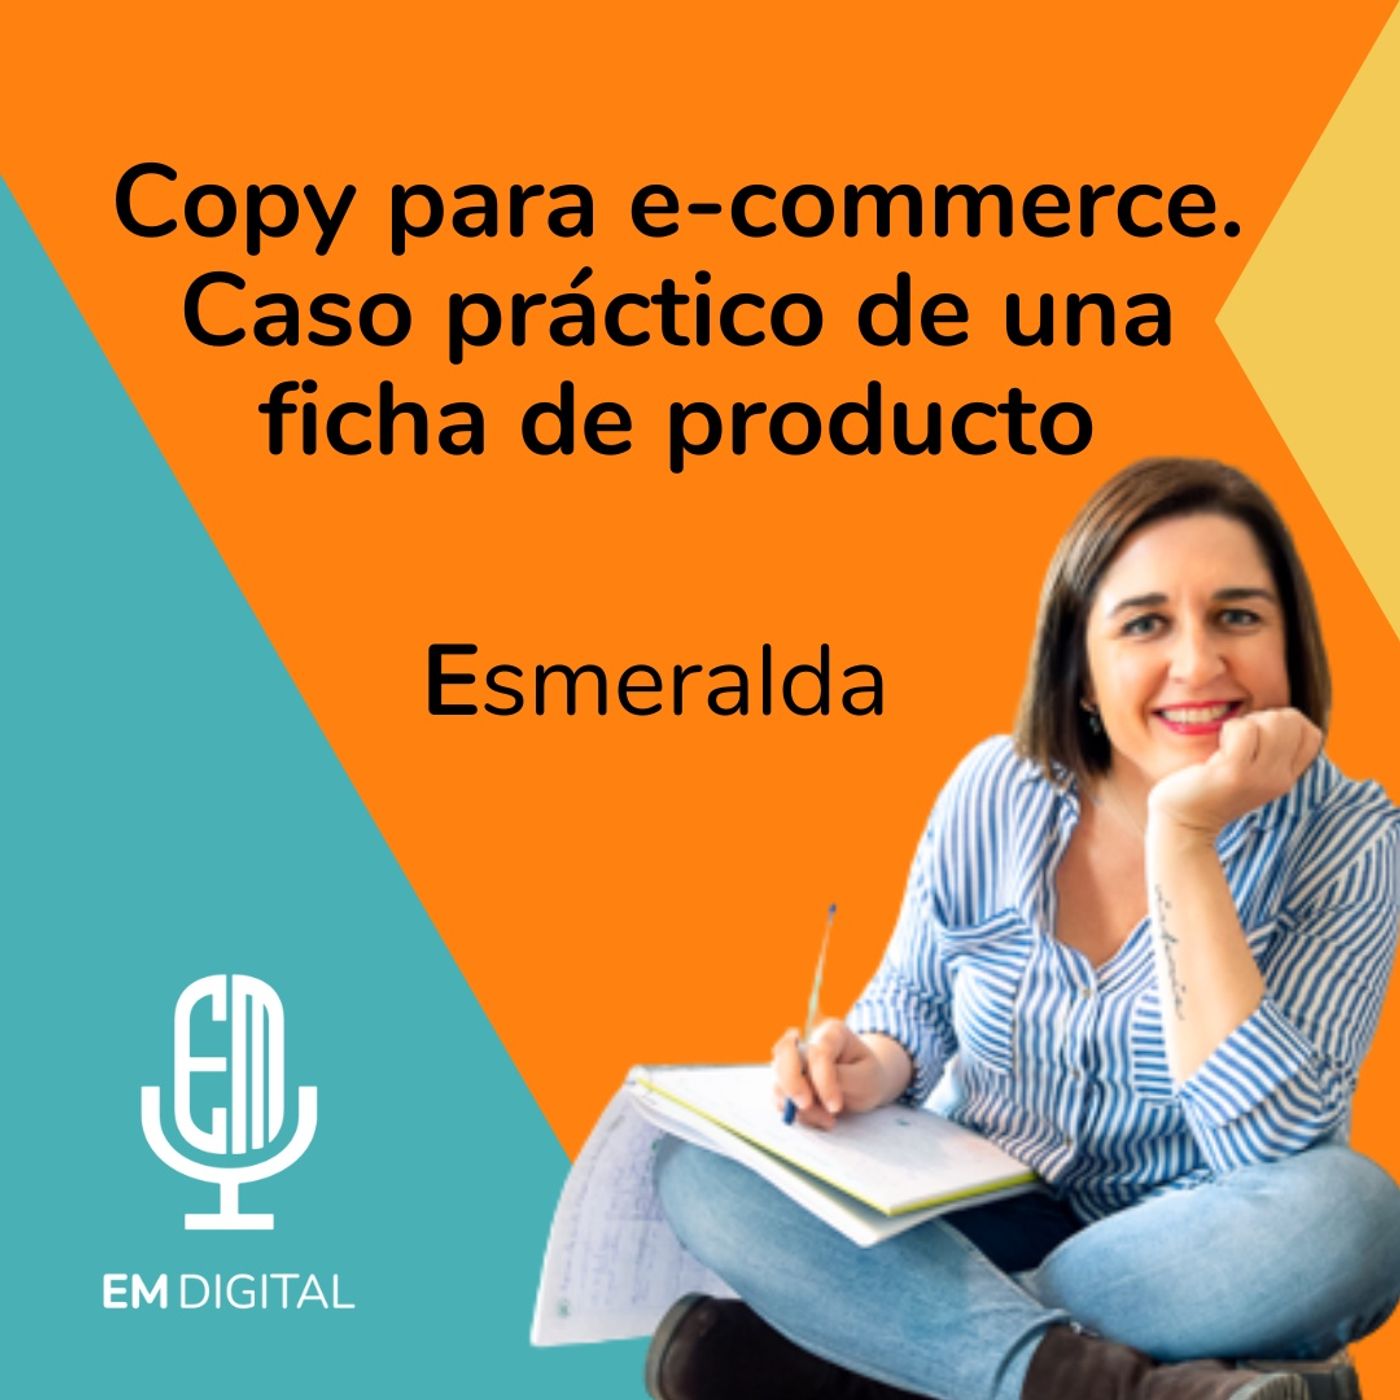 Copy para e-commerce: caso práctico de una ficha de producto. Esmeralda